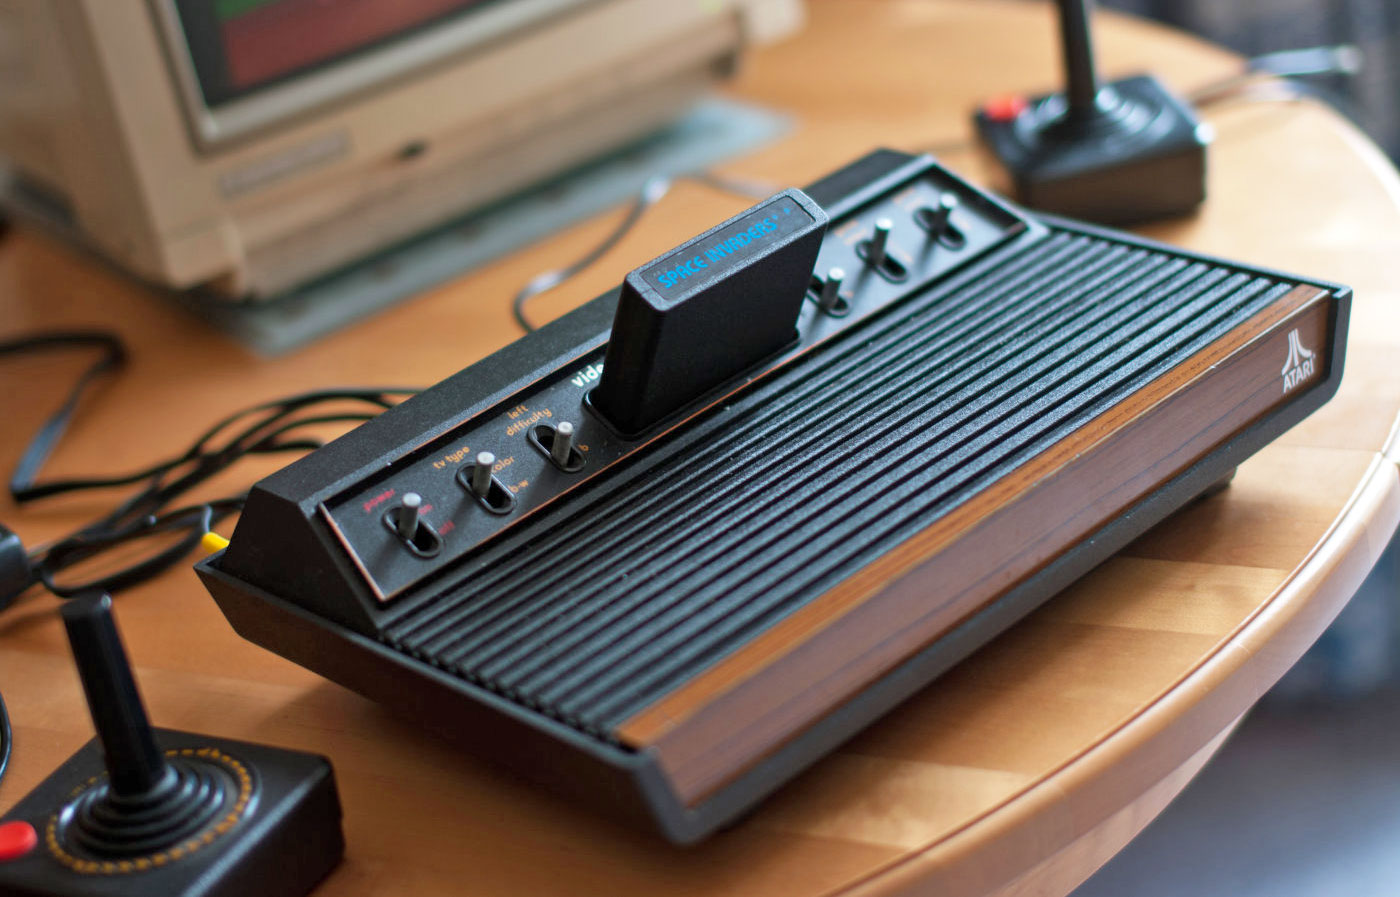 Зараз Atari, вже неодноразово перепродана і має мало спільного з легендарної корпорацією з 70-х, займається в основному онлайн-казино та іншими азартними іграми на реальні гроші